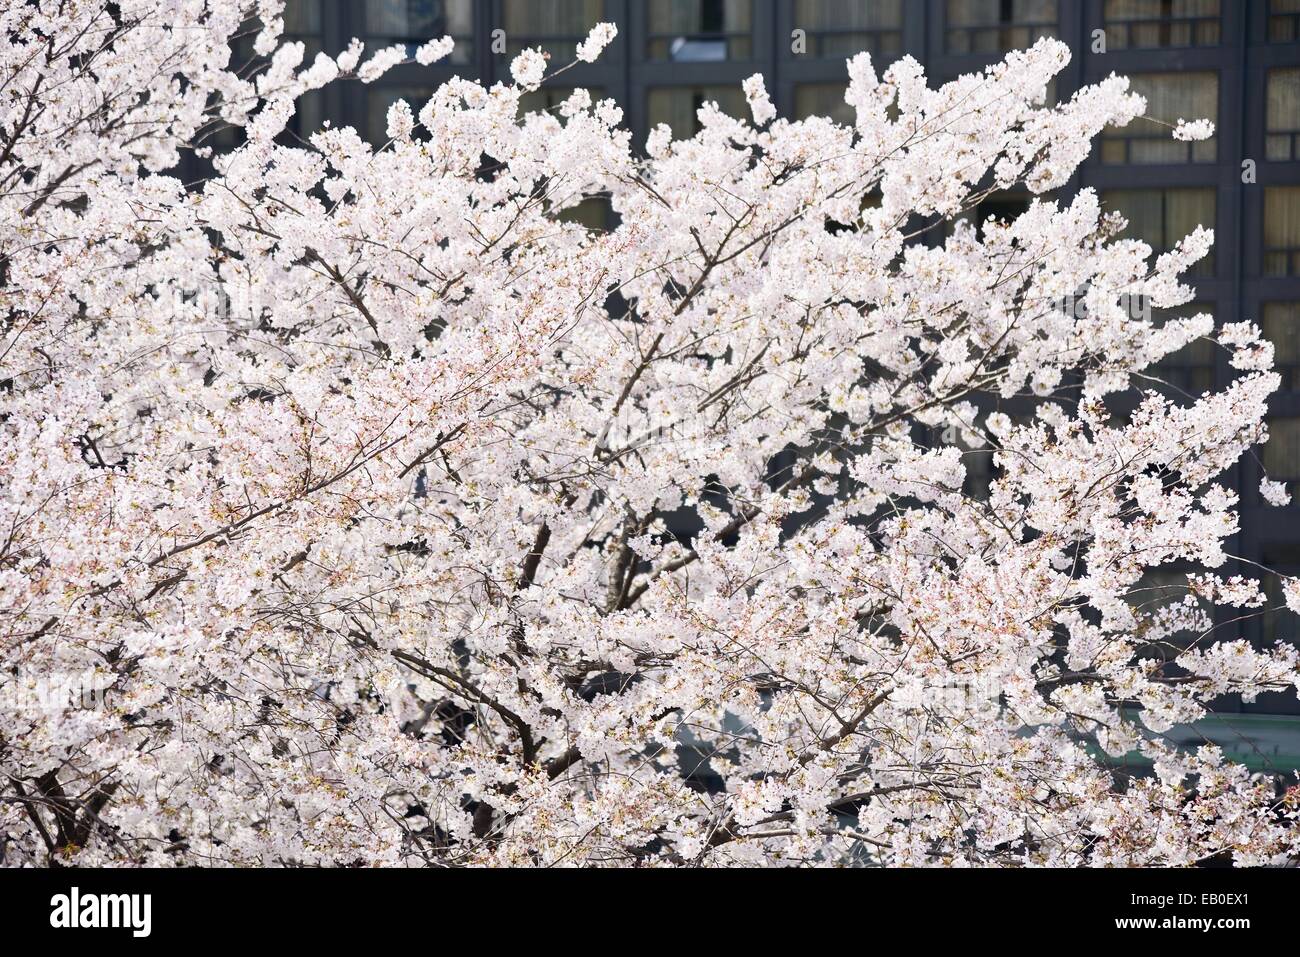 fresh Korean cherry blossoms in full bloom Stock Photo